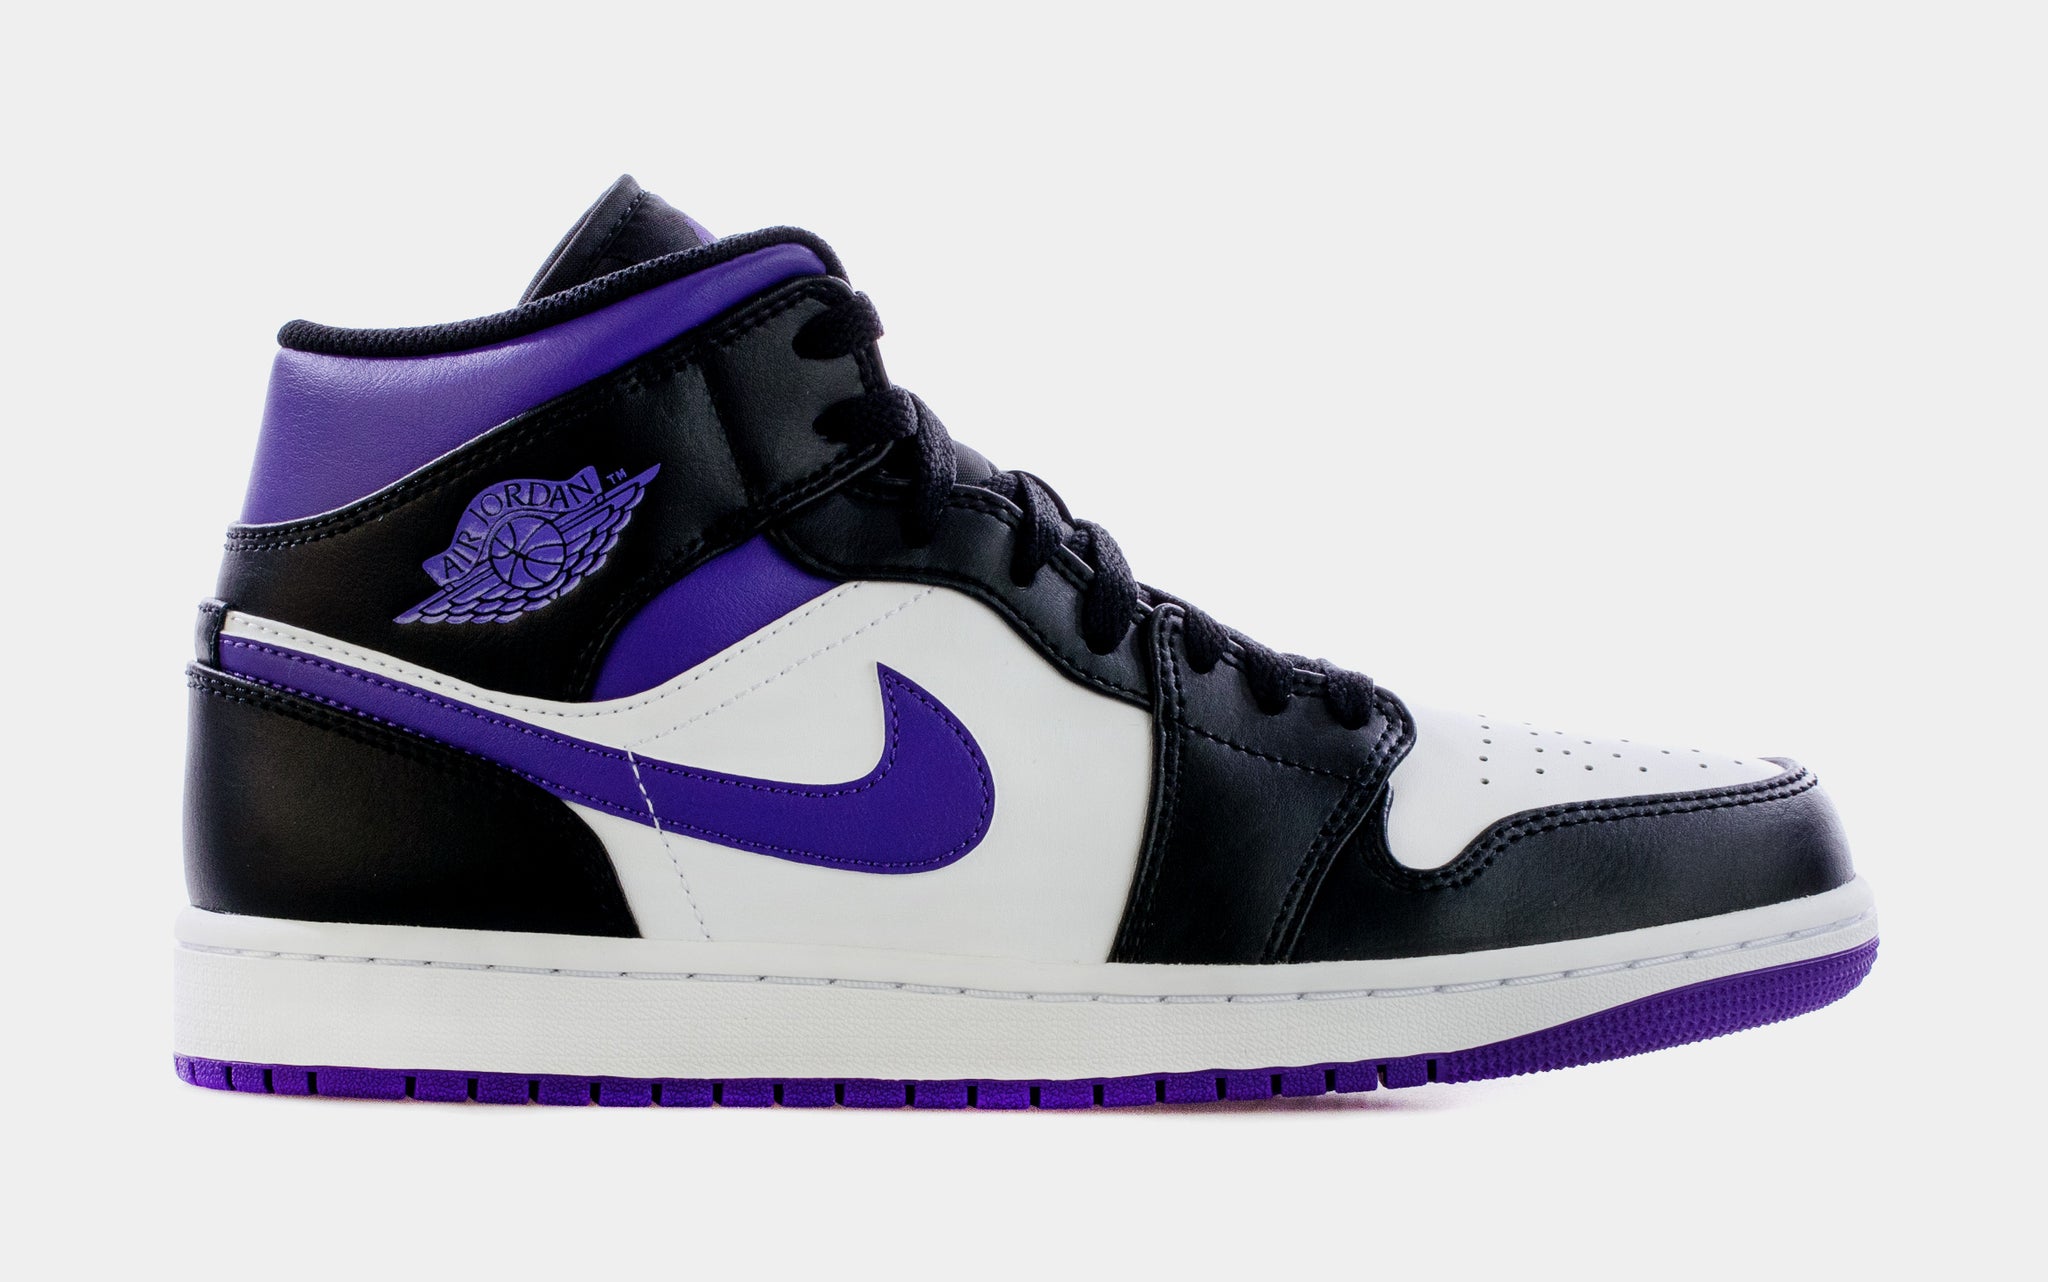 impressionisme godkende Australien Jordan Air Jordan 1 Retro Mid Court Purple Mens Lifestyle Shoes Black  Purple 554724-095 – Shoe Palace